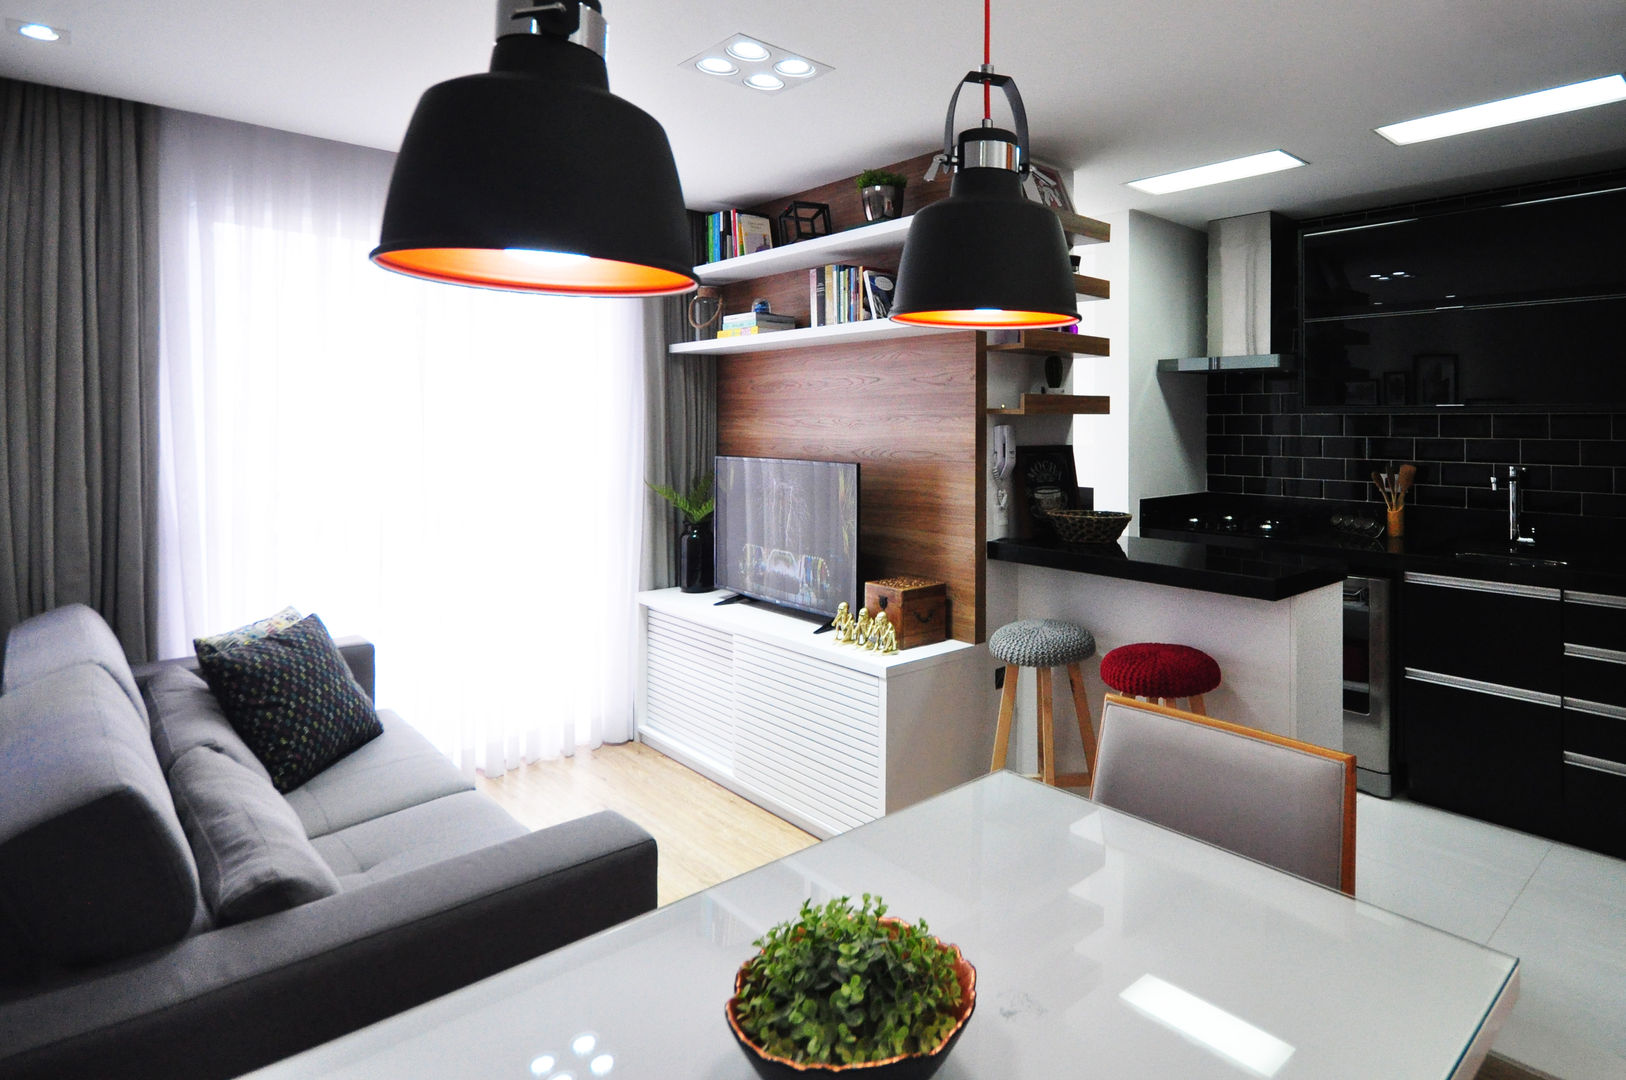 APARTAMENTO 50M² - SANTO ANDRÉ, Condecorar Arquitetura e Interiores Condecorar Arquitetura e Interiores Modern living room